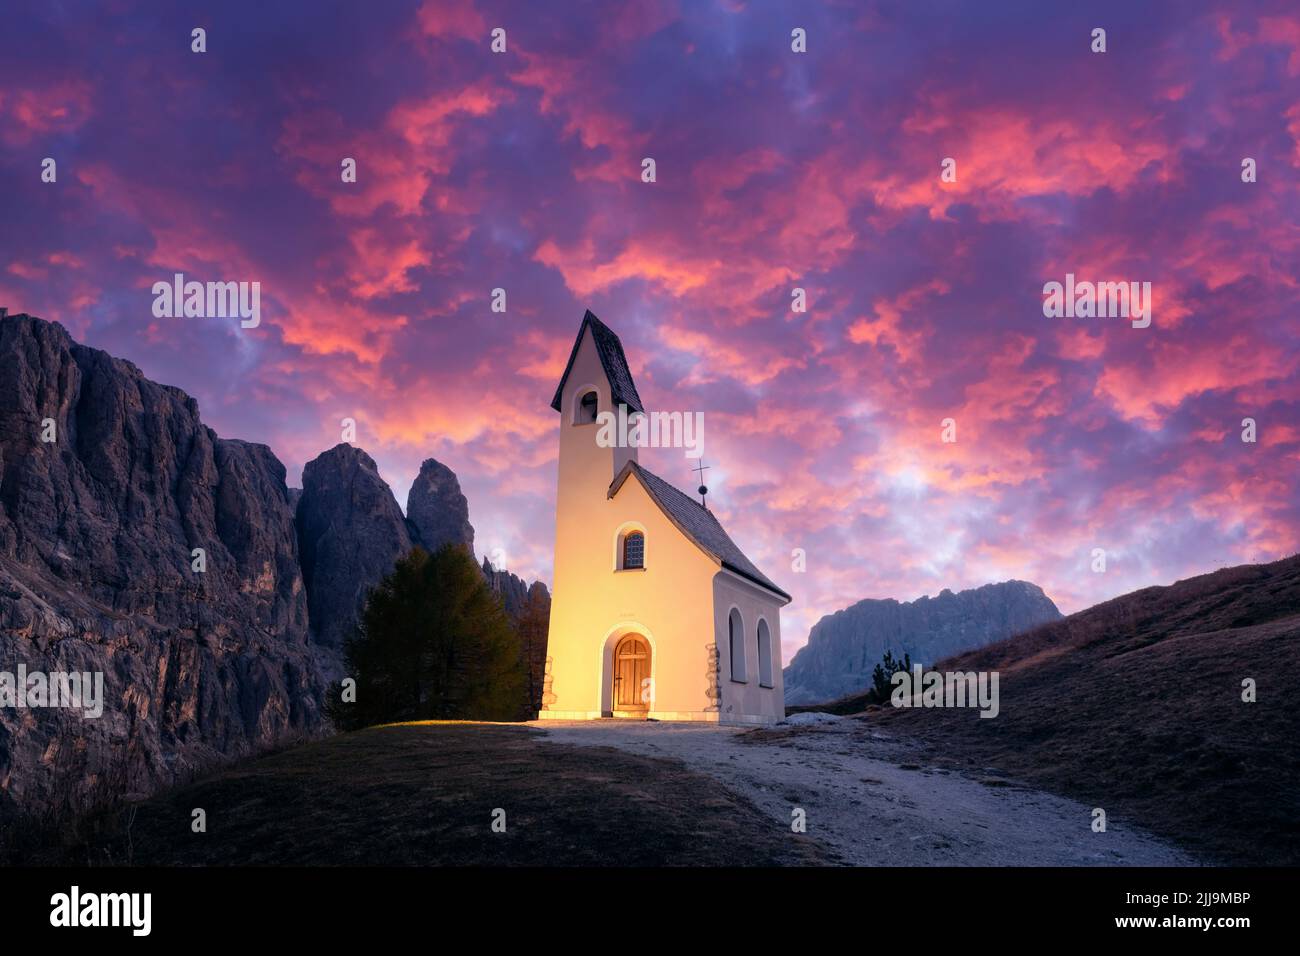 Increíble vista en la pequeña capilla iluminada - Kapelle Ciapela en Gardena Pass, las montañas Dolomitas italianas. Puesta de sol colorida en los Alpes Dolomitas, Italia. Fotografía de paisajes Foto de stock